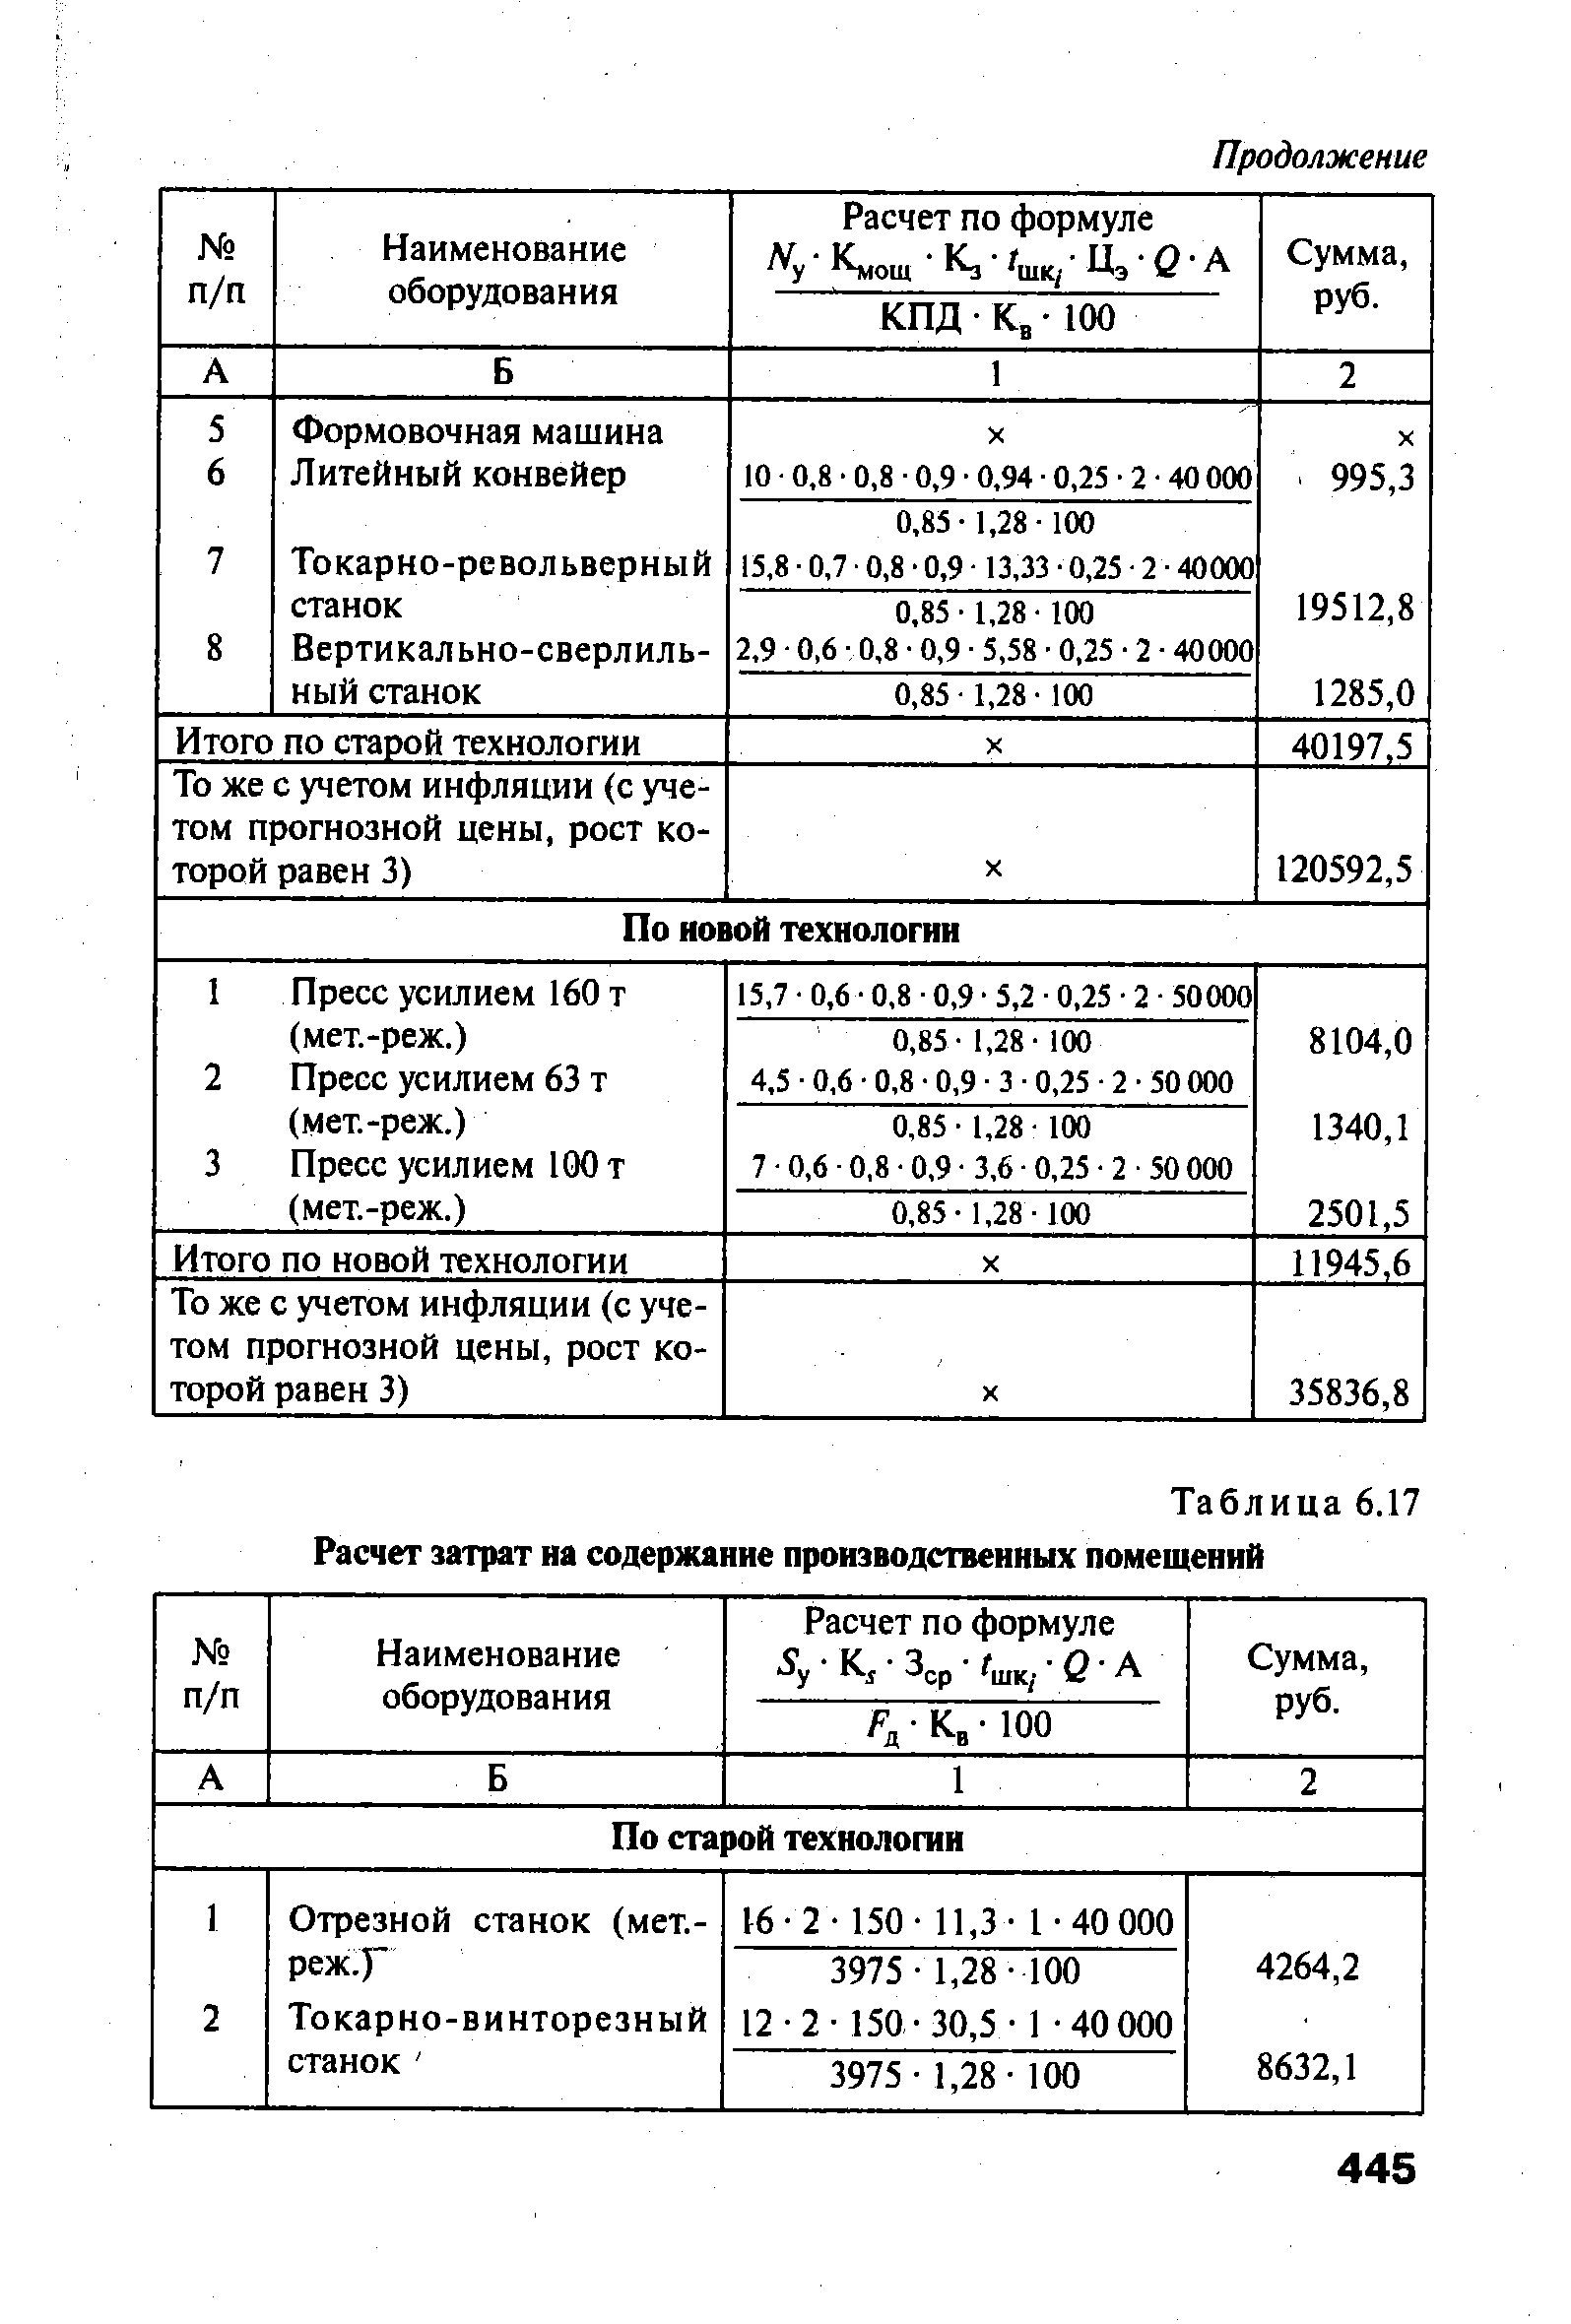 Таблица 6.17 Расчет затрат на содержание производственных помещений
